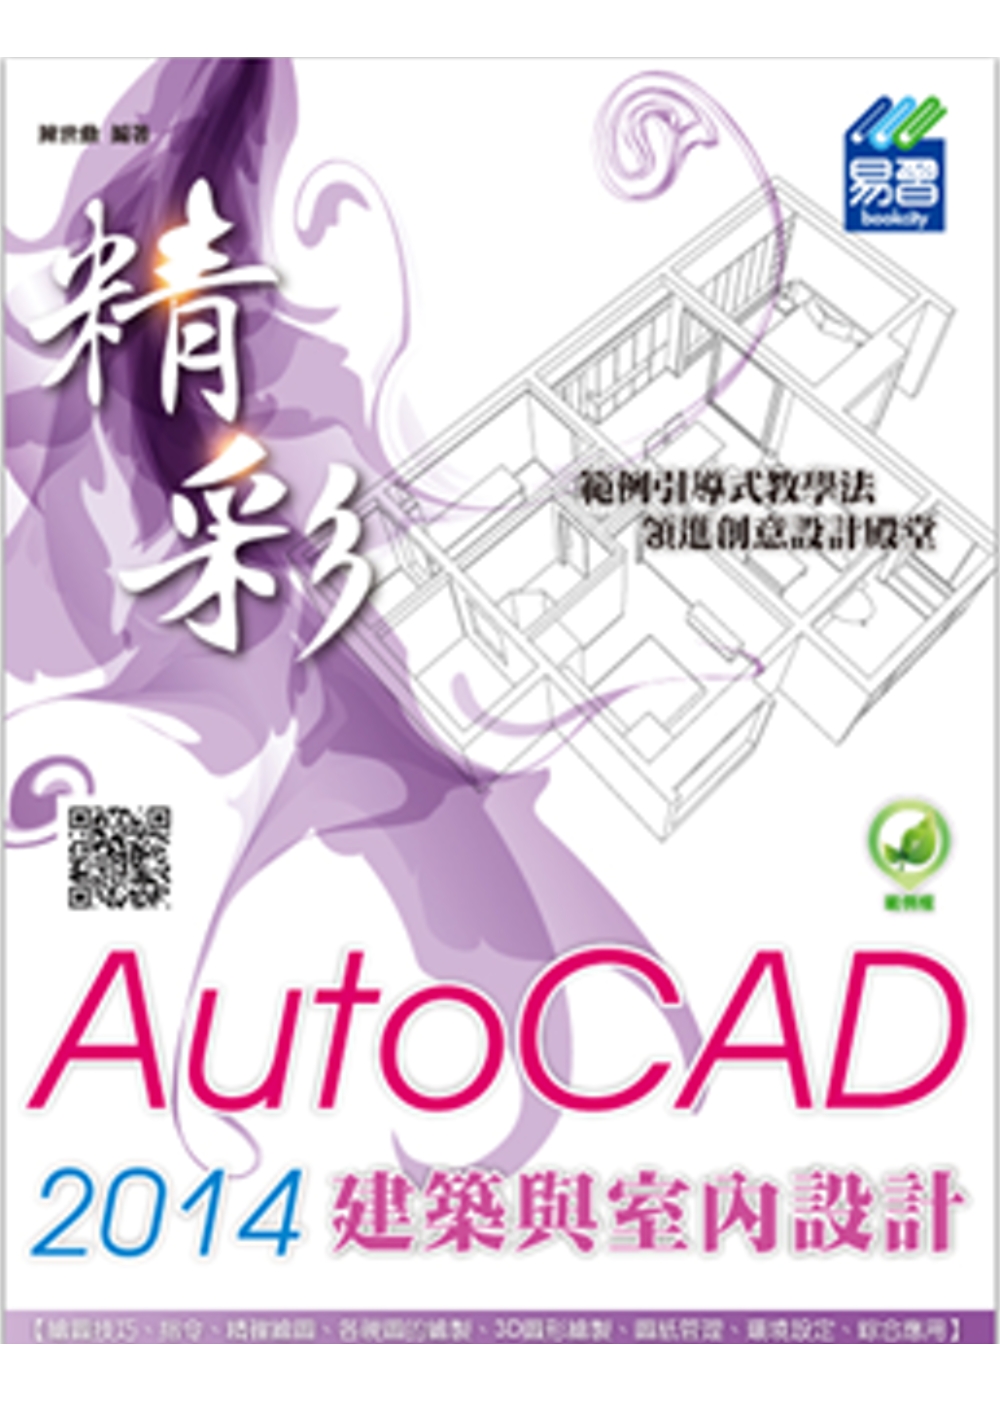 精彩 AutoCAD 2014 建築與室內設計(附綠色範例檔)